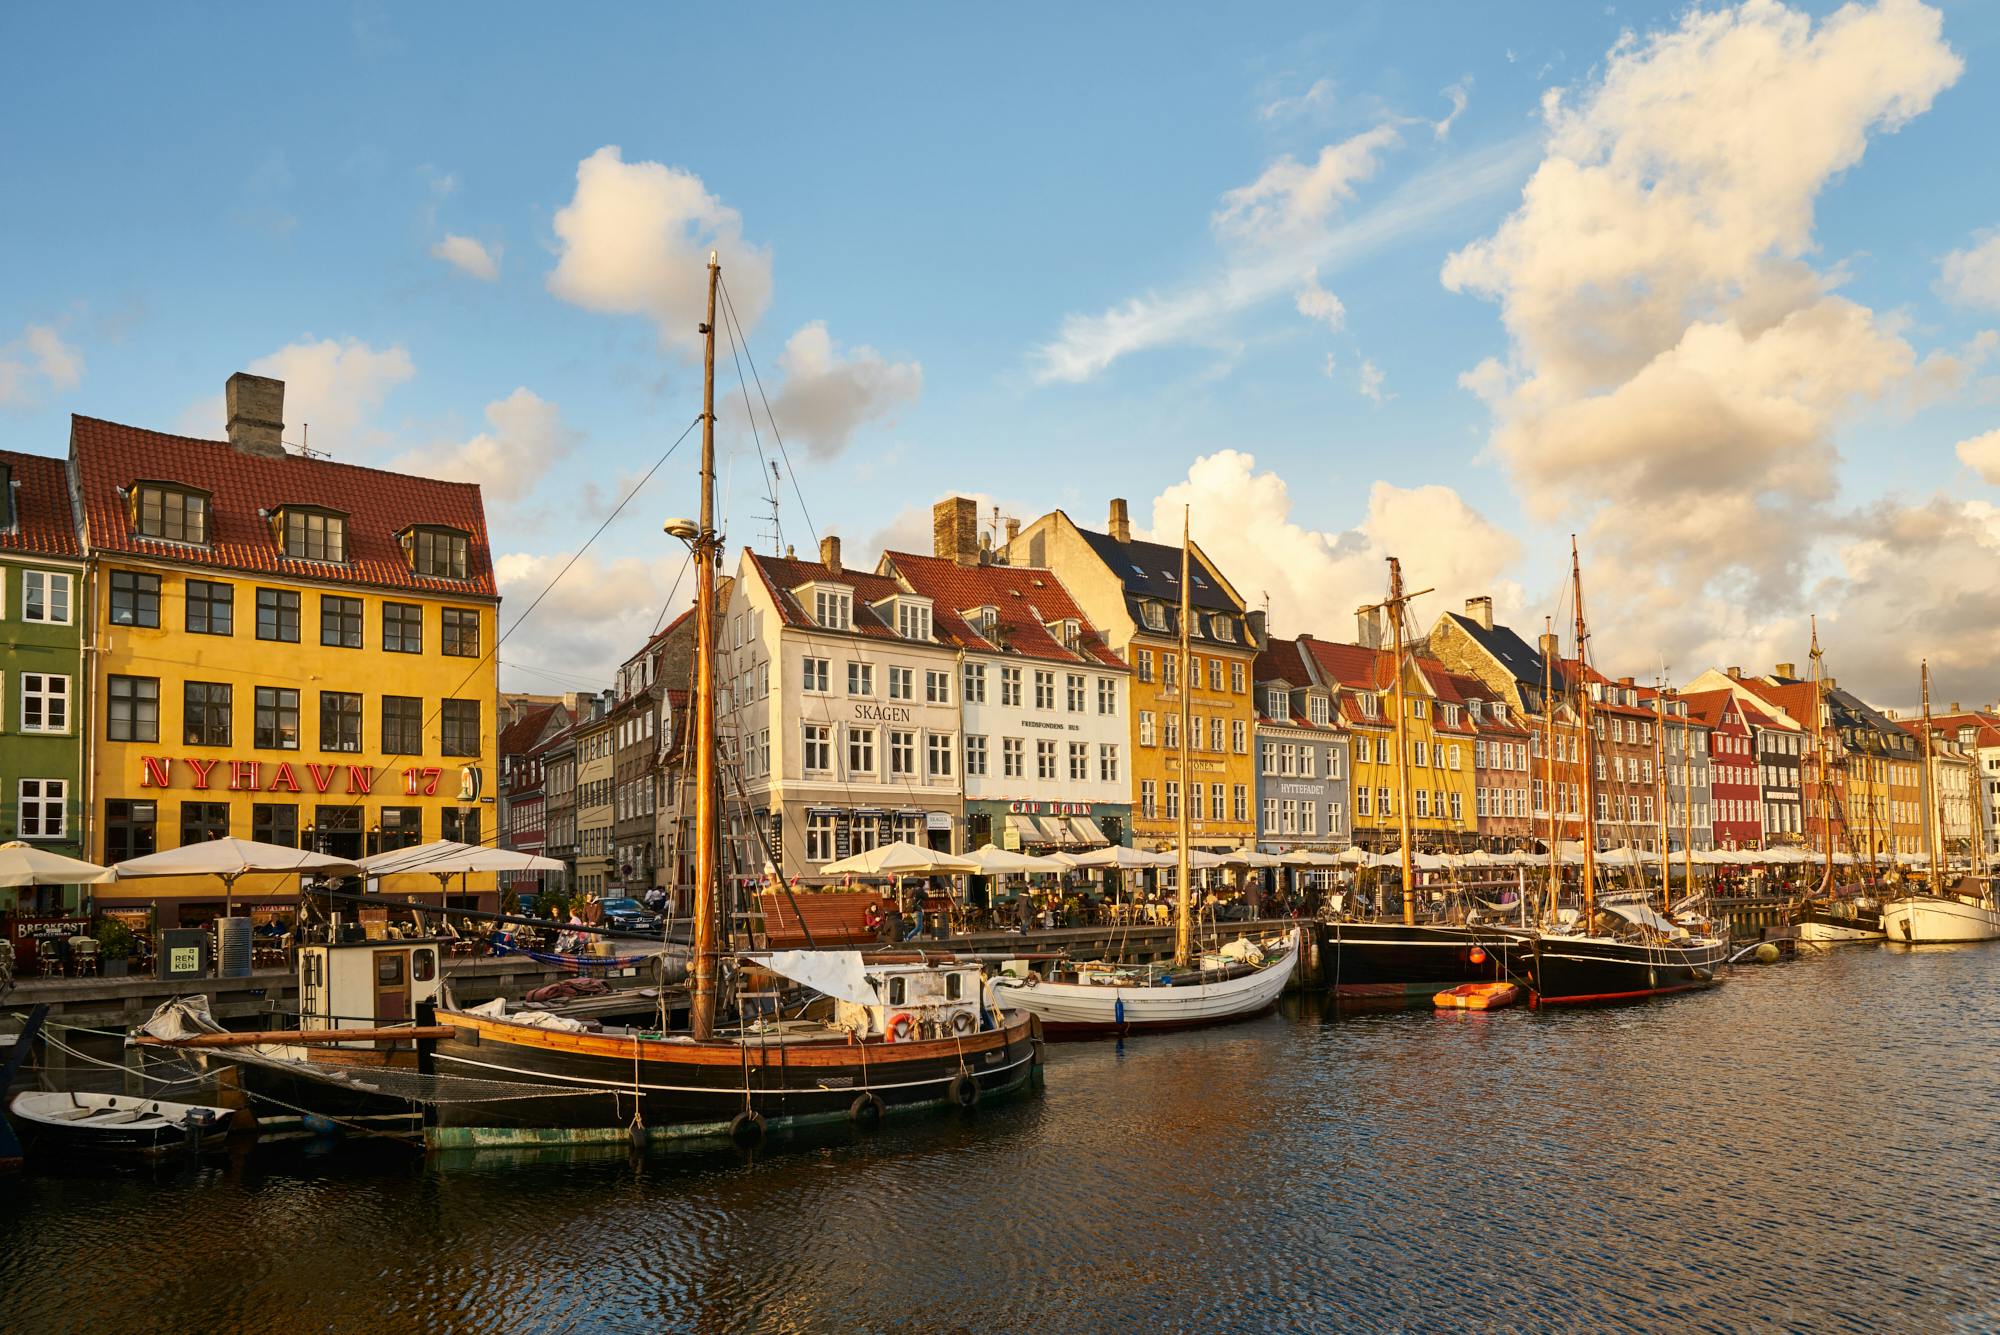 Descubra os famosos marcos de Copenhague em um tour fotográfico particular